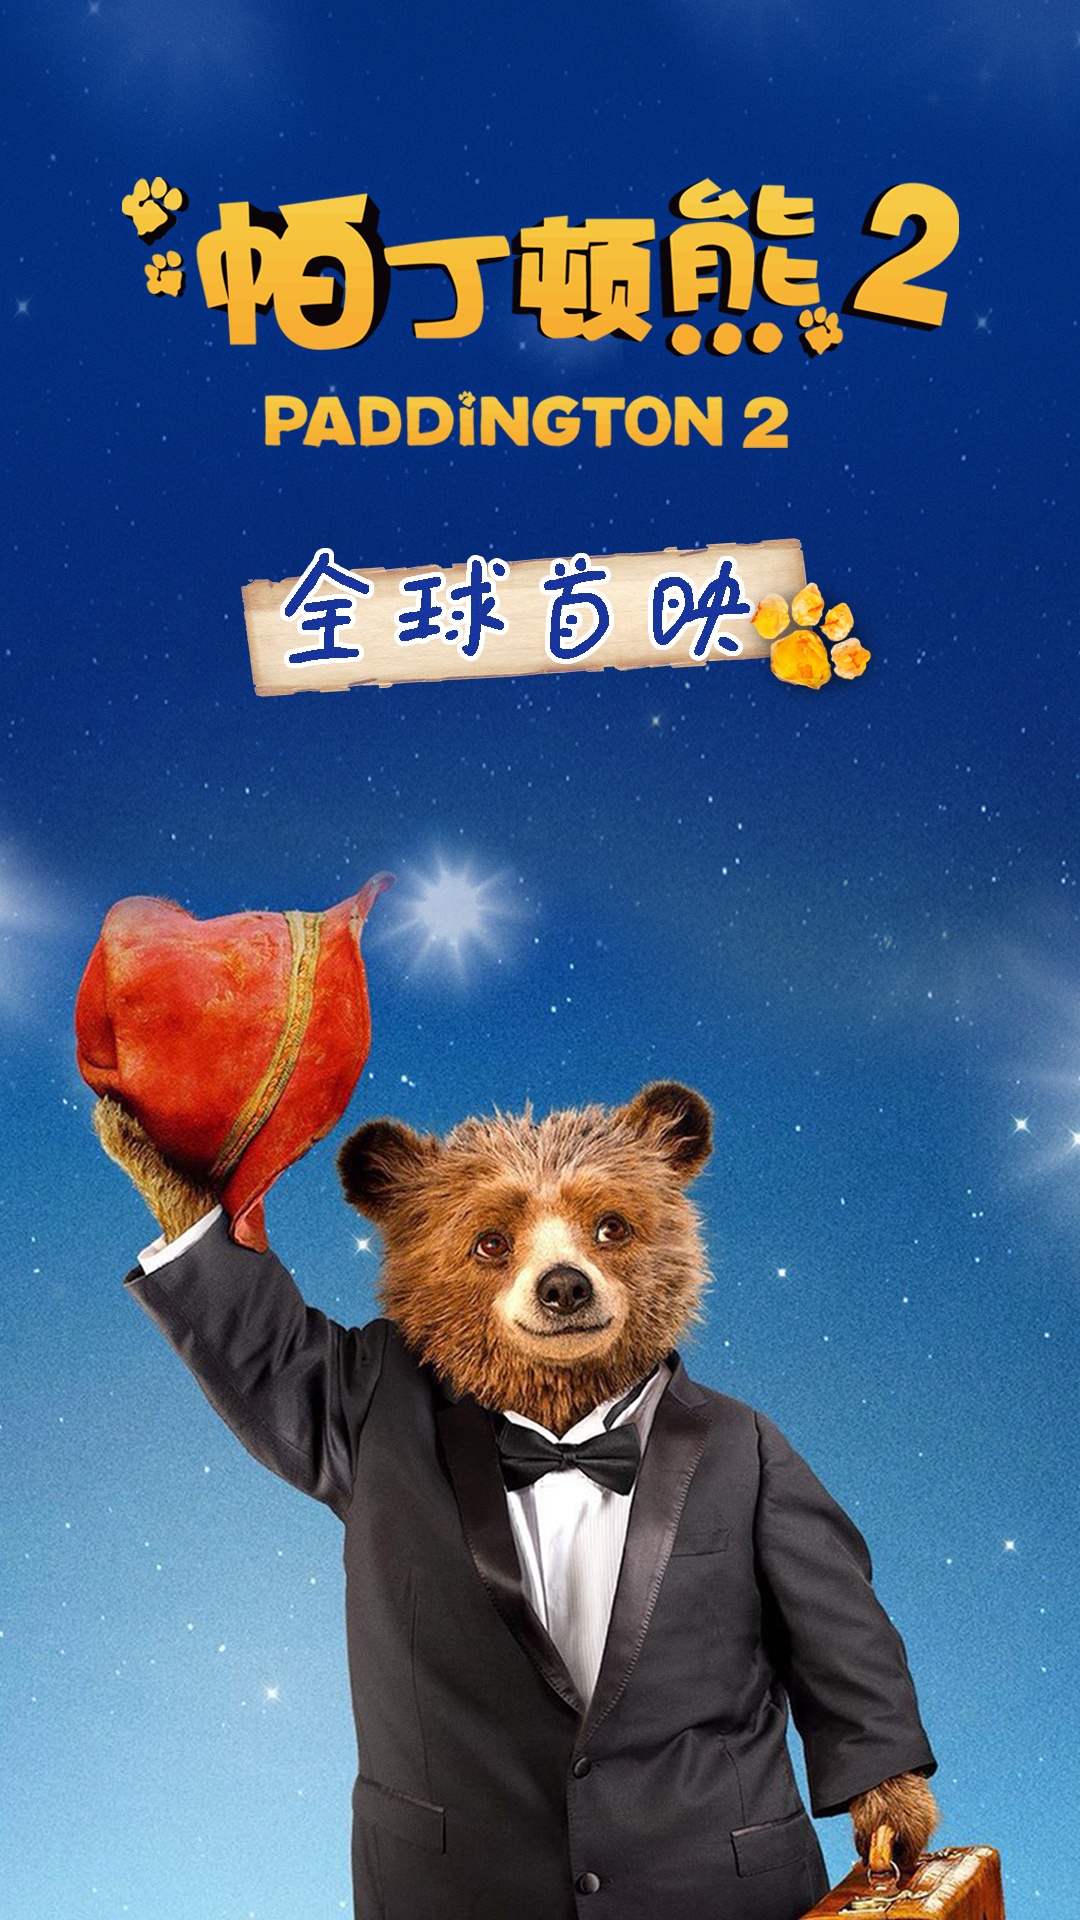 帕丁顿熊的冒险之旅第二季英文版视频封面